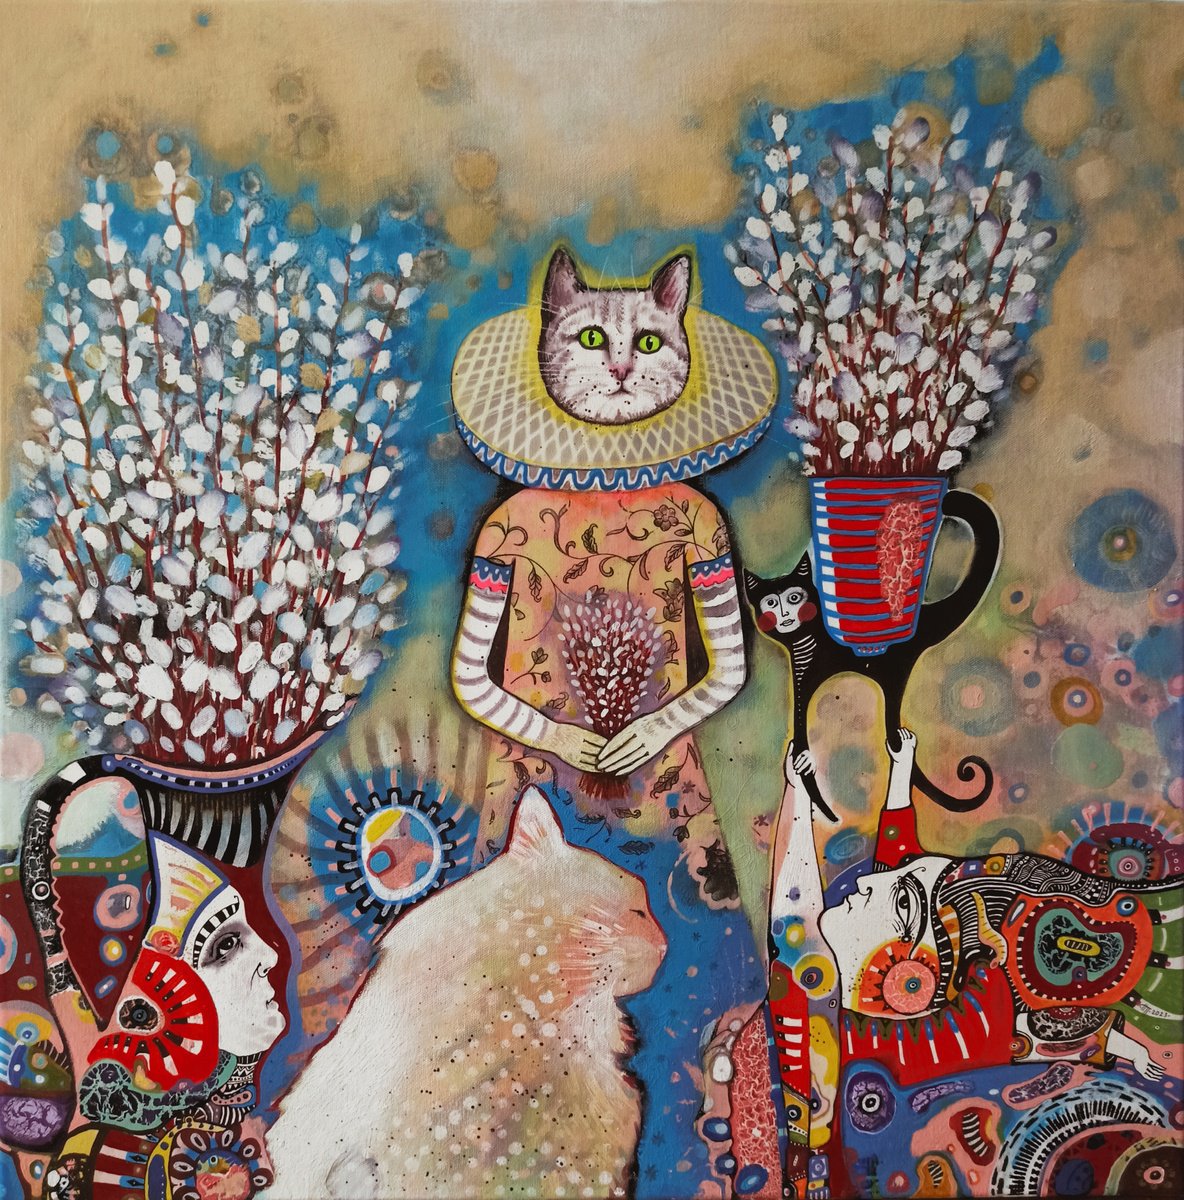 Queen of cats by Natalia Pastuszenko